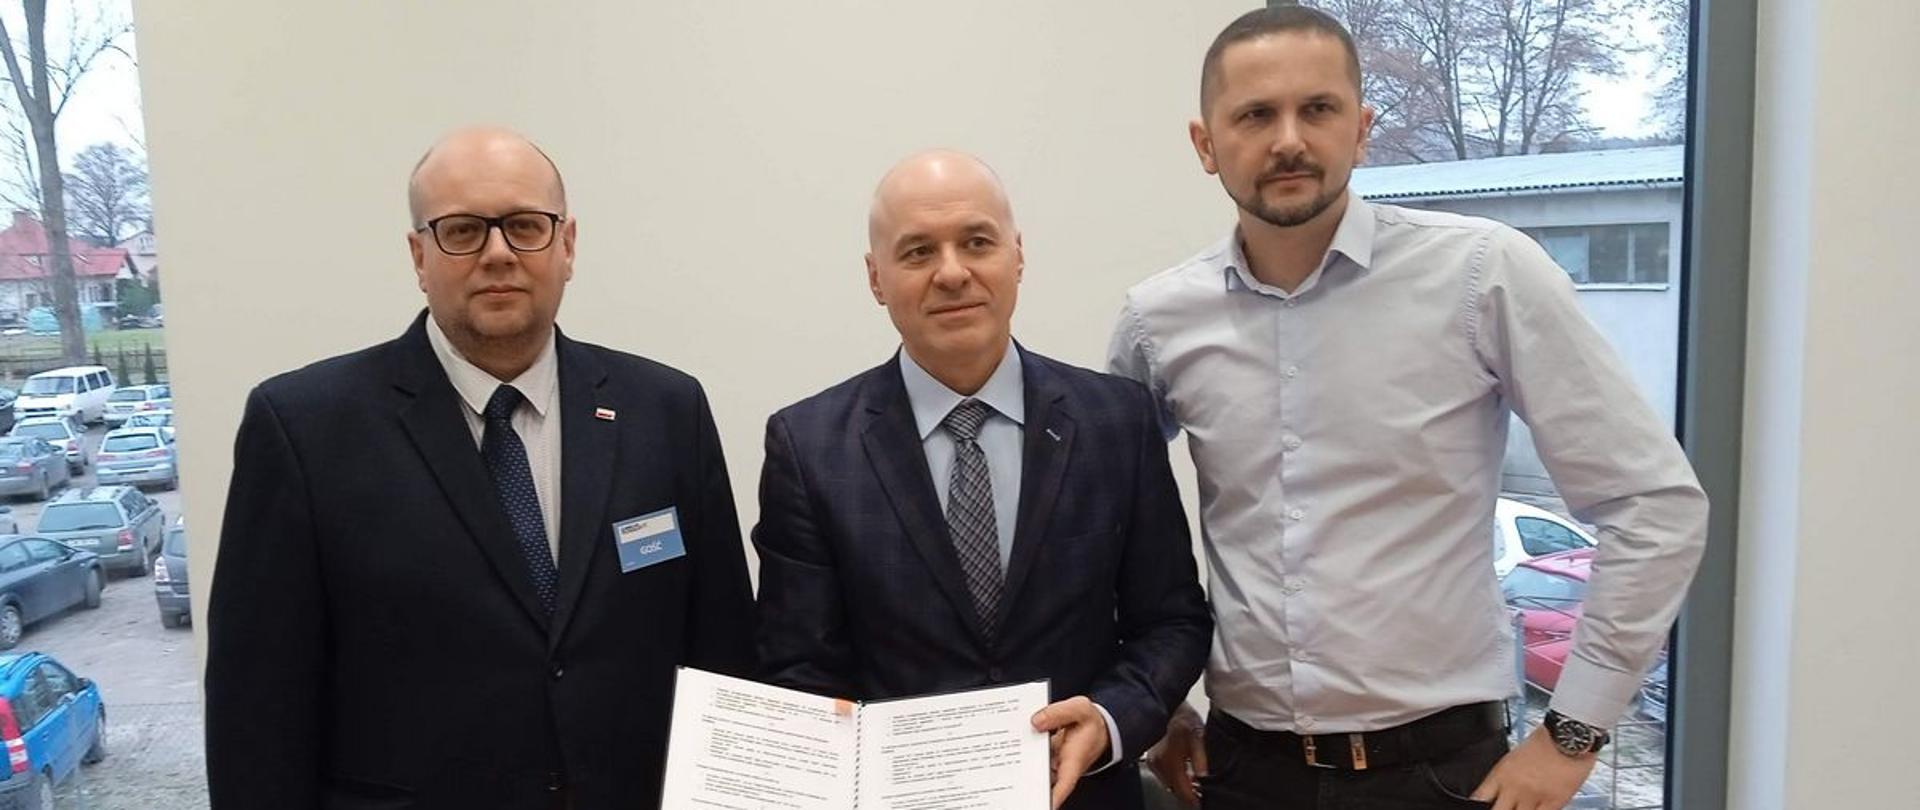 Podpisanie umowy w zakładzie mechanicznym „SciTeex” w Kłoczewie